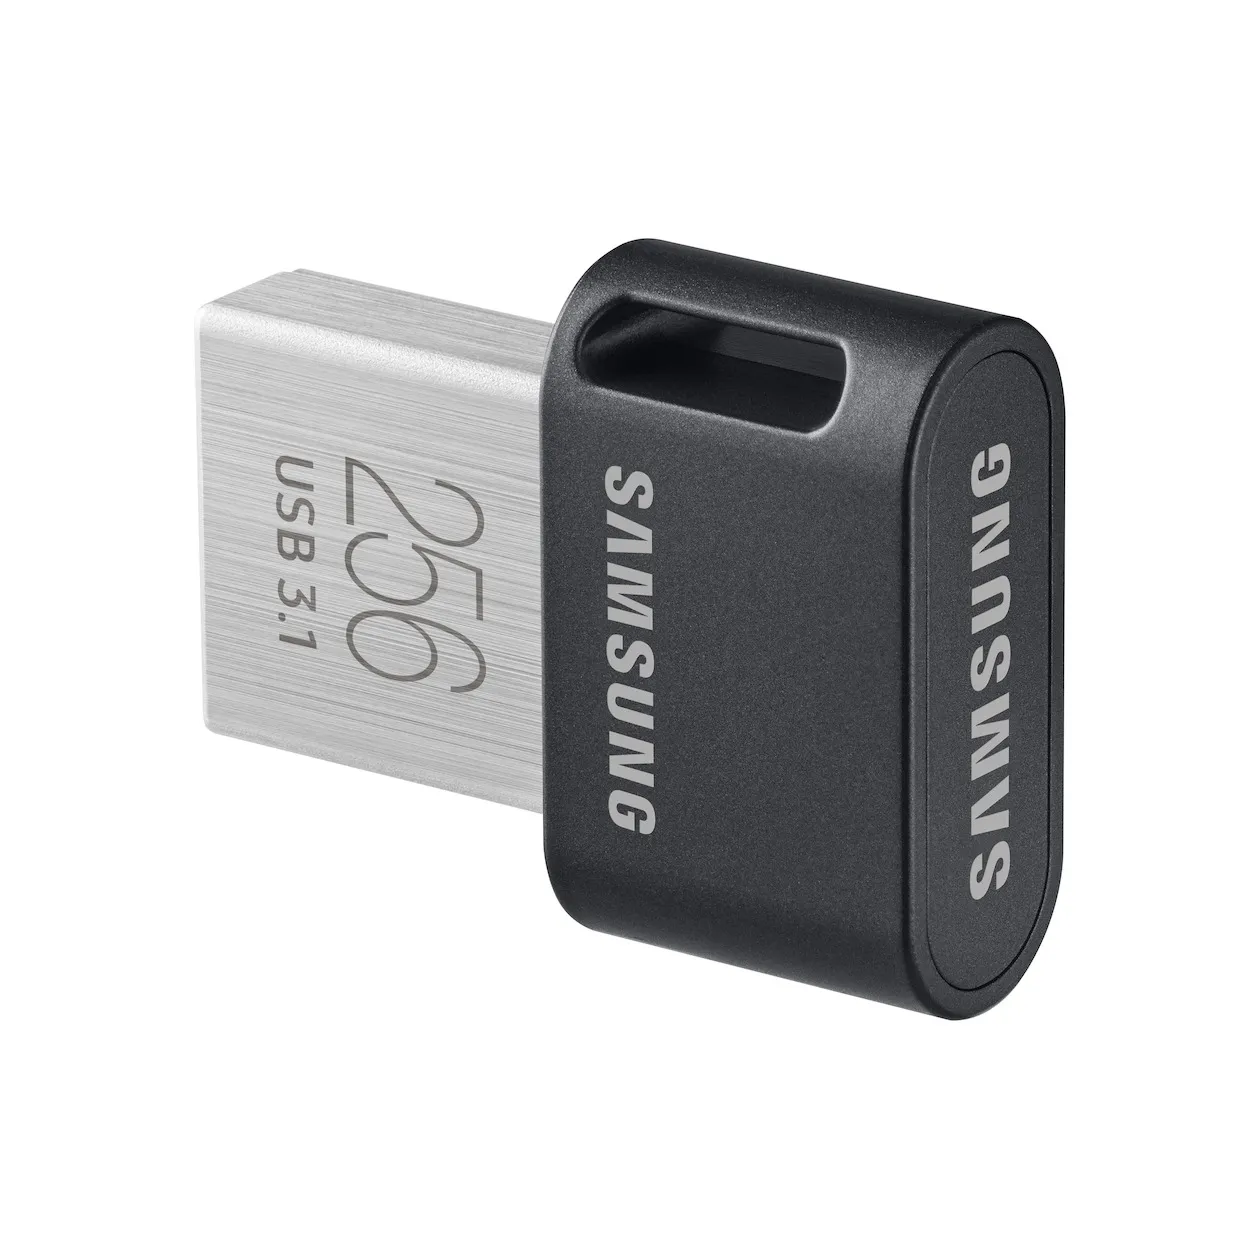 Samsung FIT Plus USB Stick 256GB Zwart